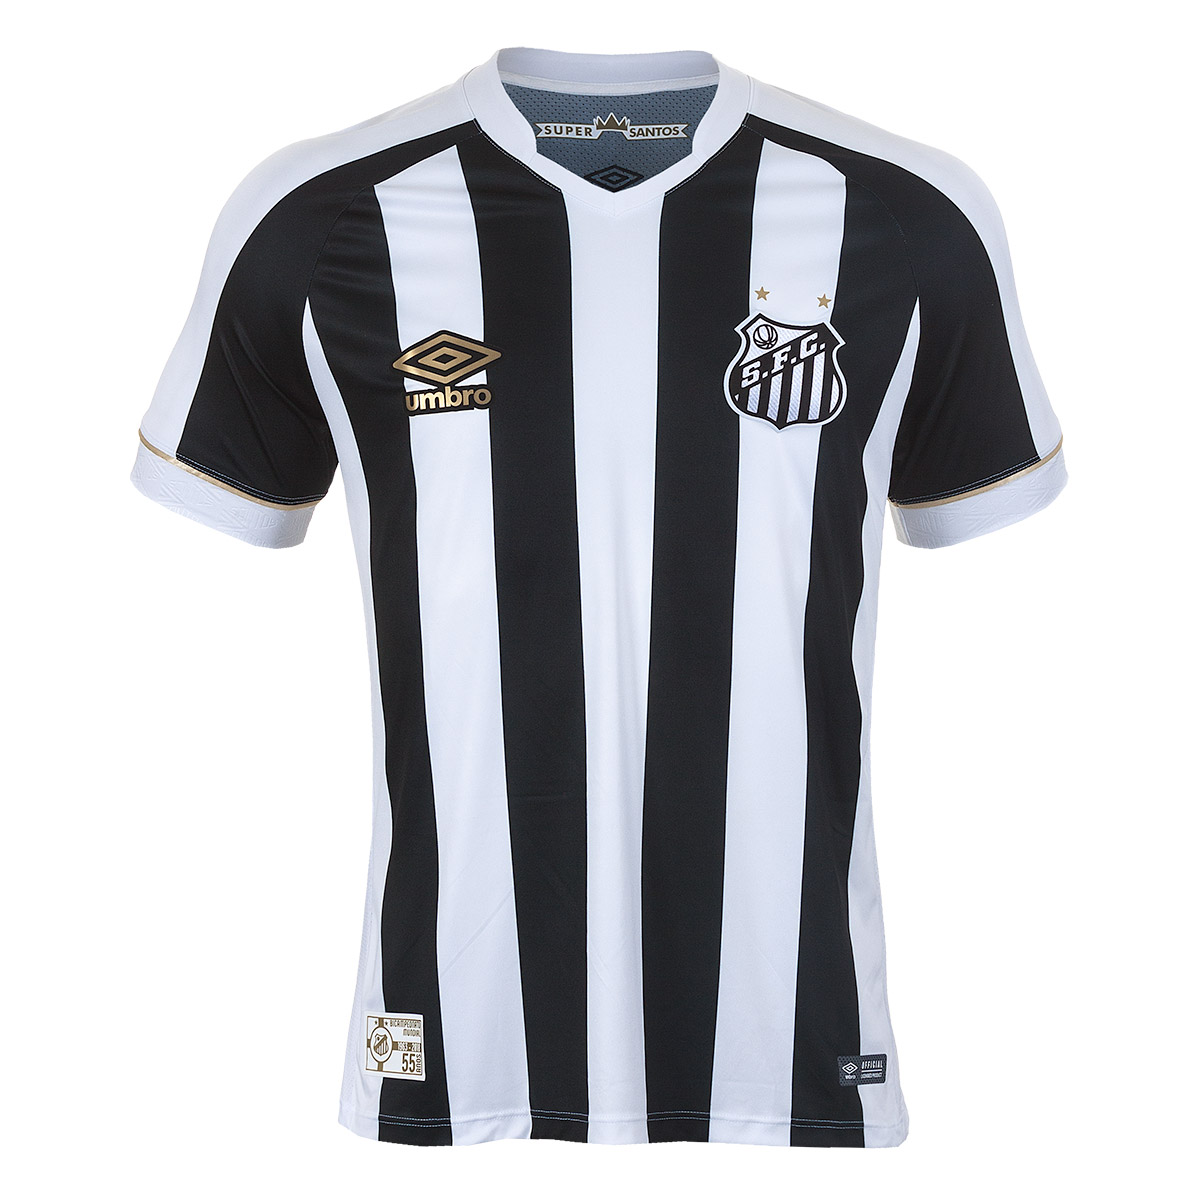 Camisa Masc. Umbro Santos Of 2 2018 Futebol - Branco/Preto